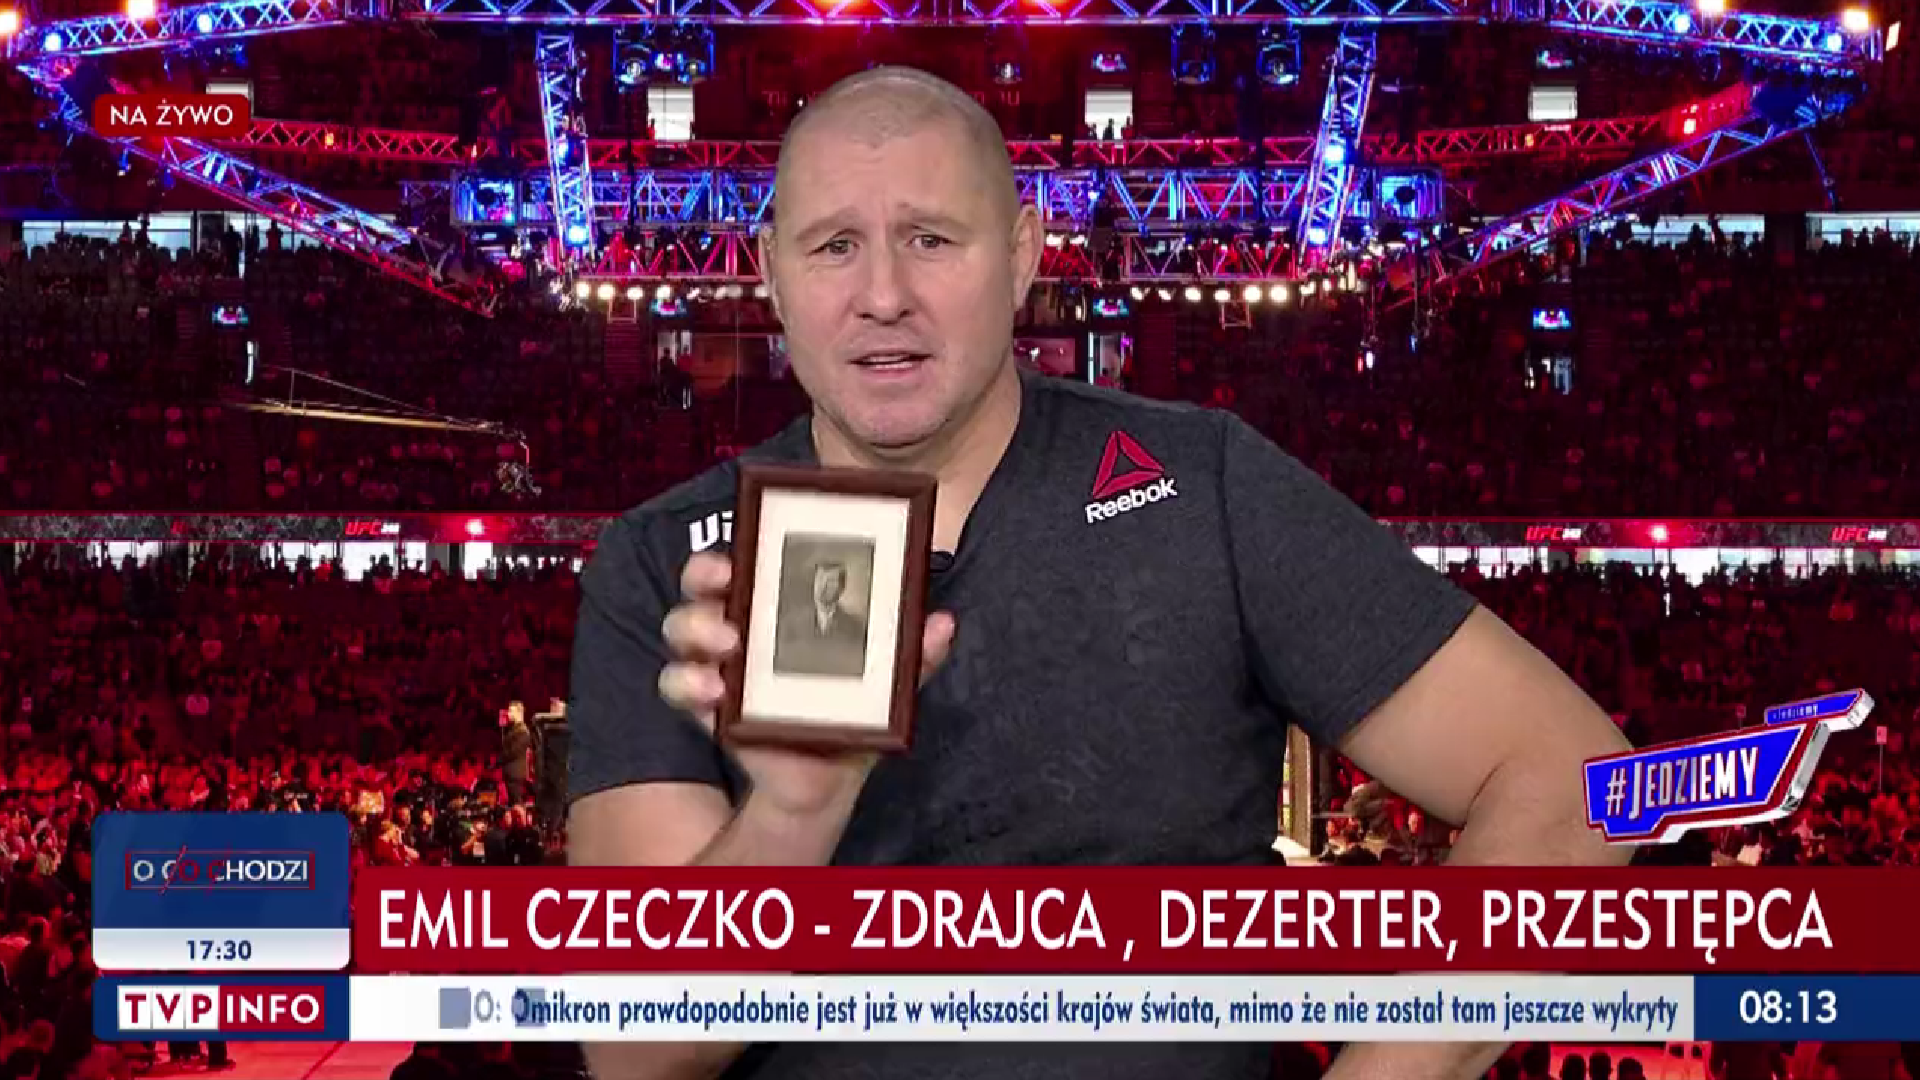 (VIDEO) Kiedyś Najman, teraz Okniński! Trener nowym ekspertem TVP! Jest nagranie!